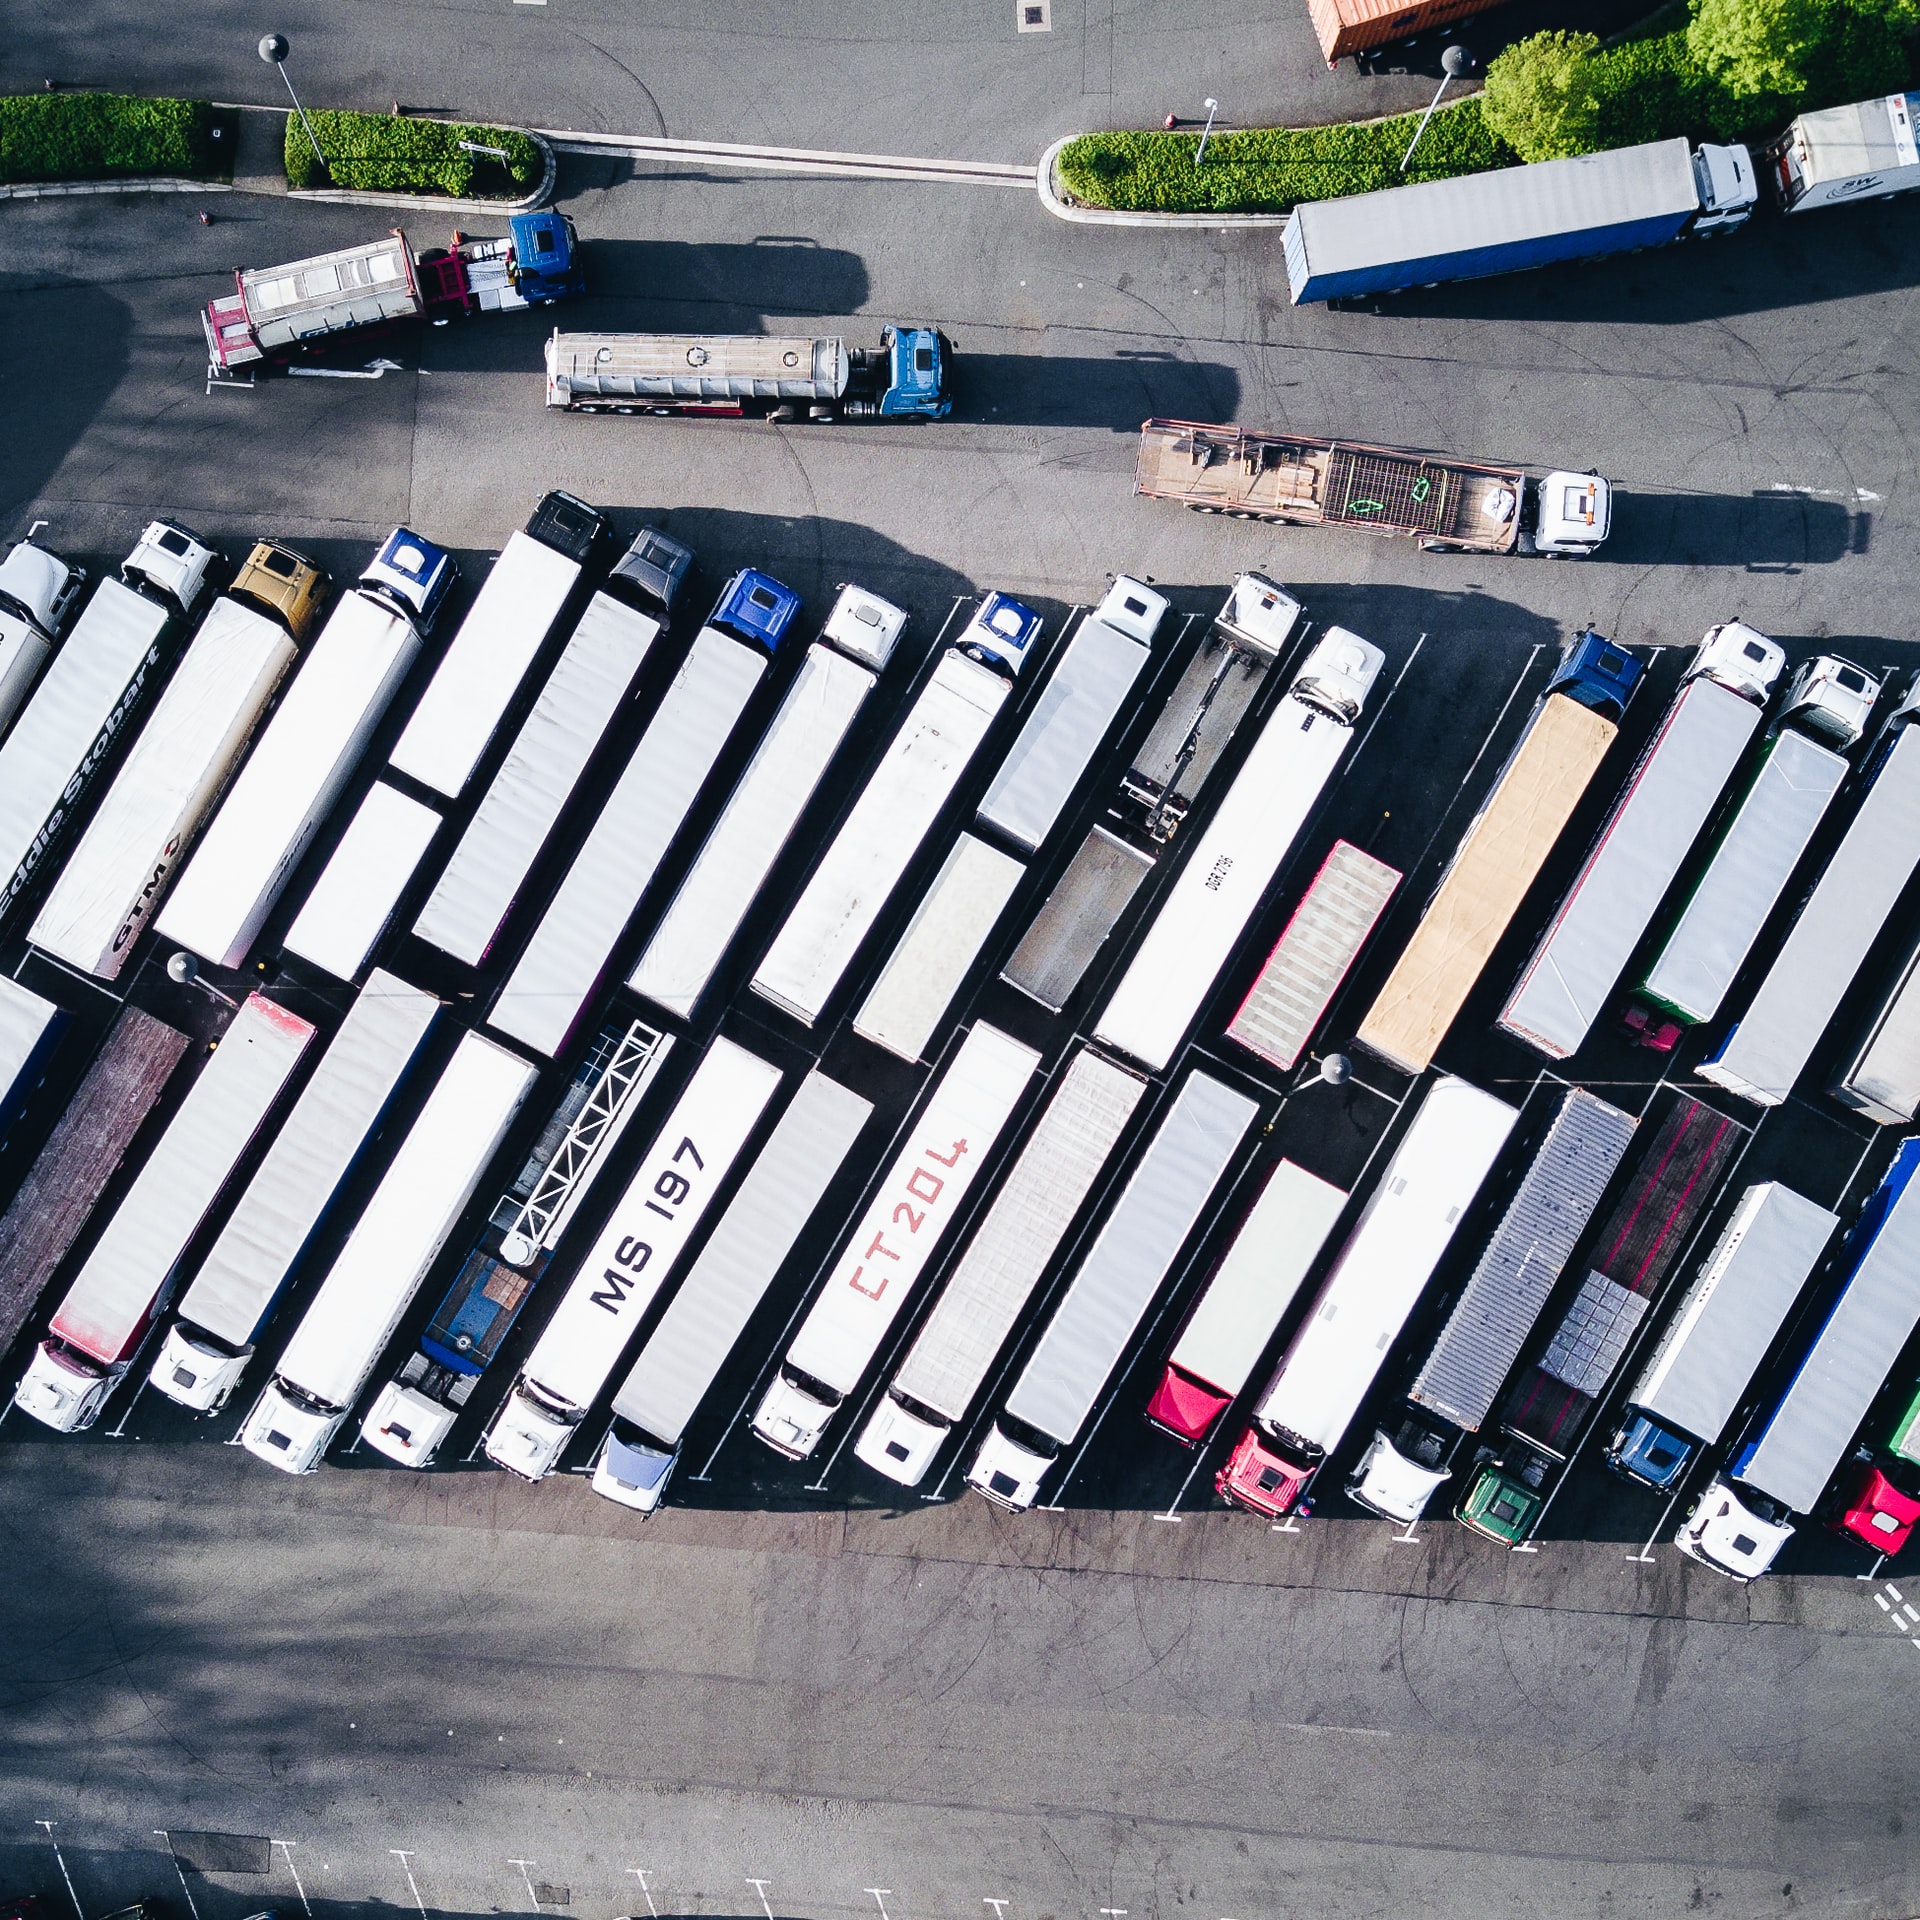 Transport de véhicules : défis et solutions dans un monde globalisé